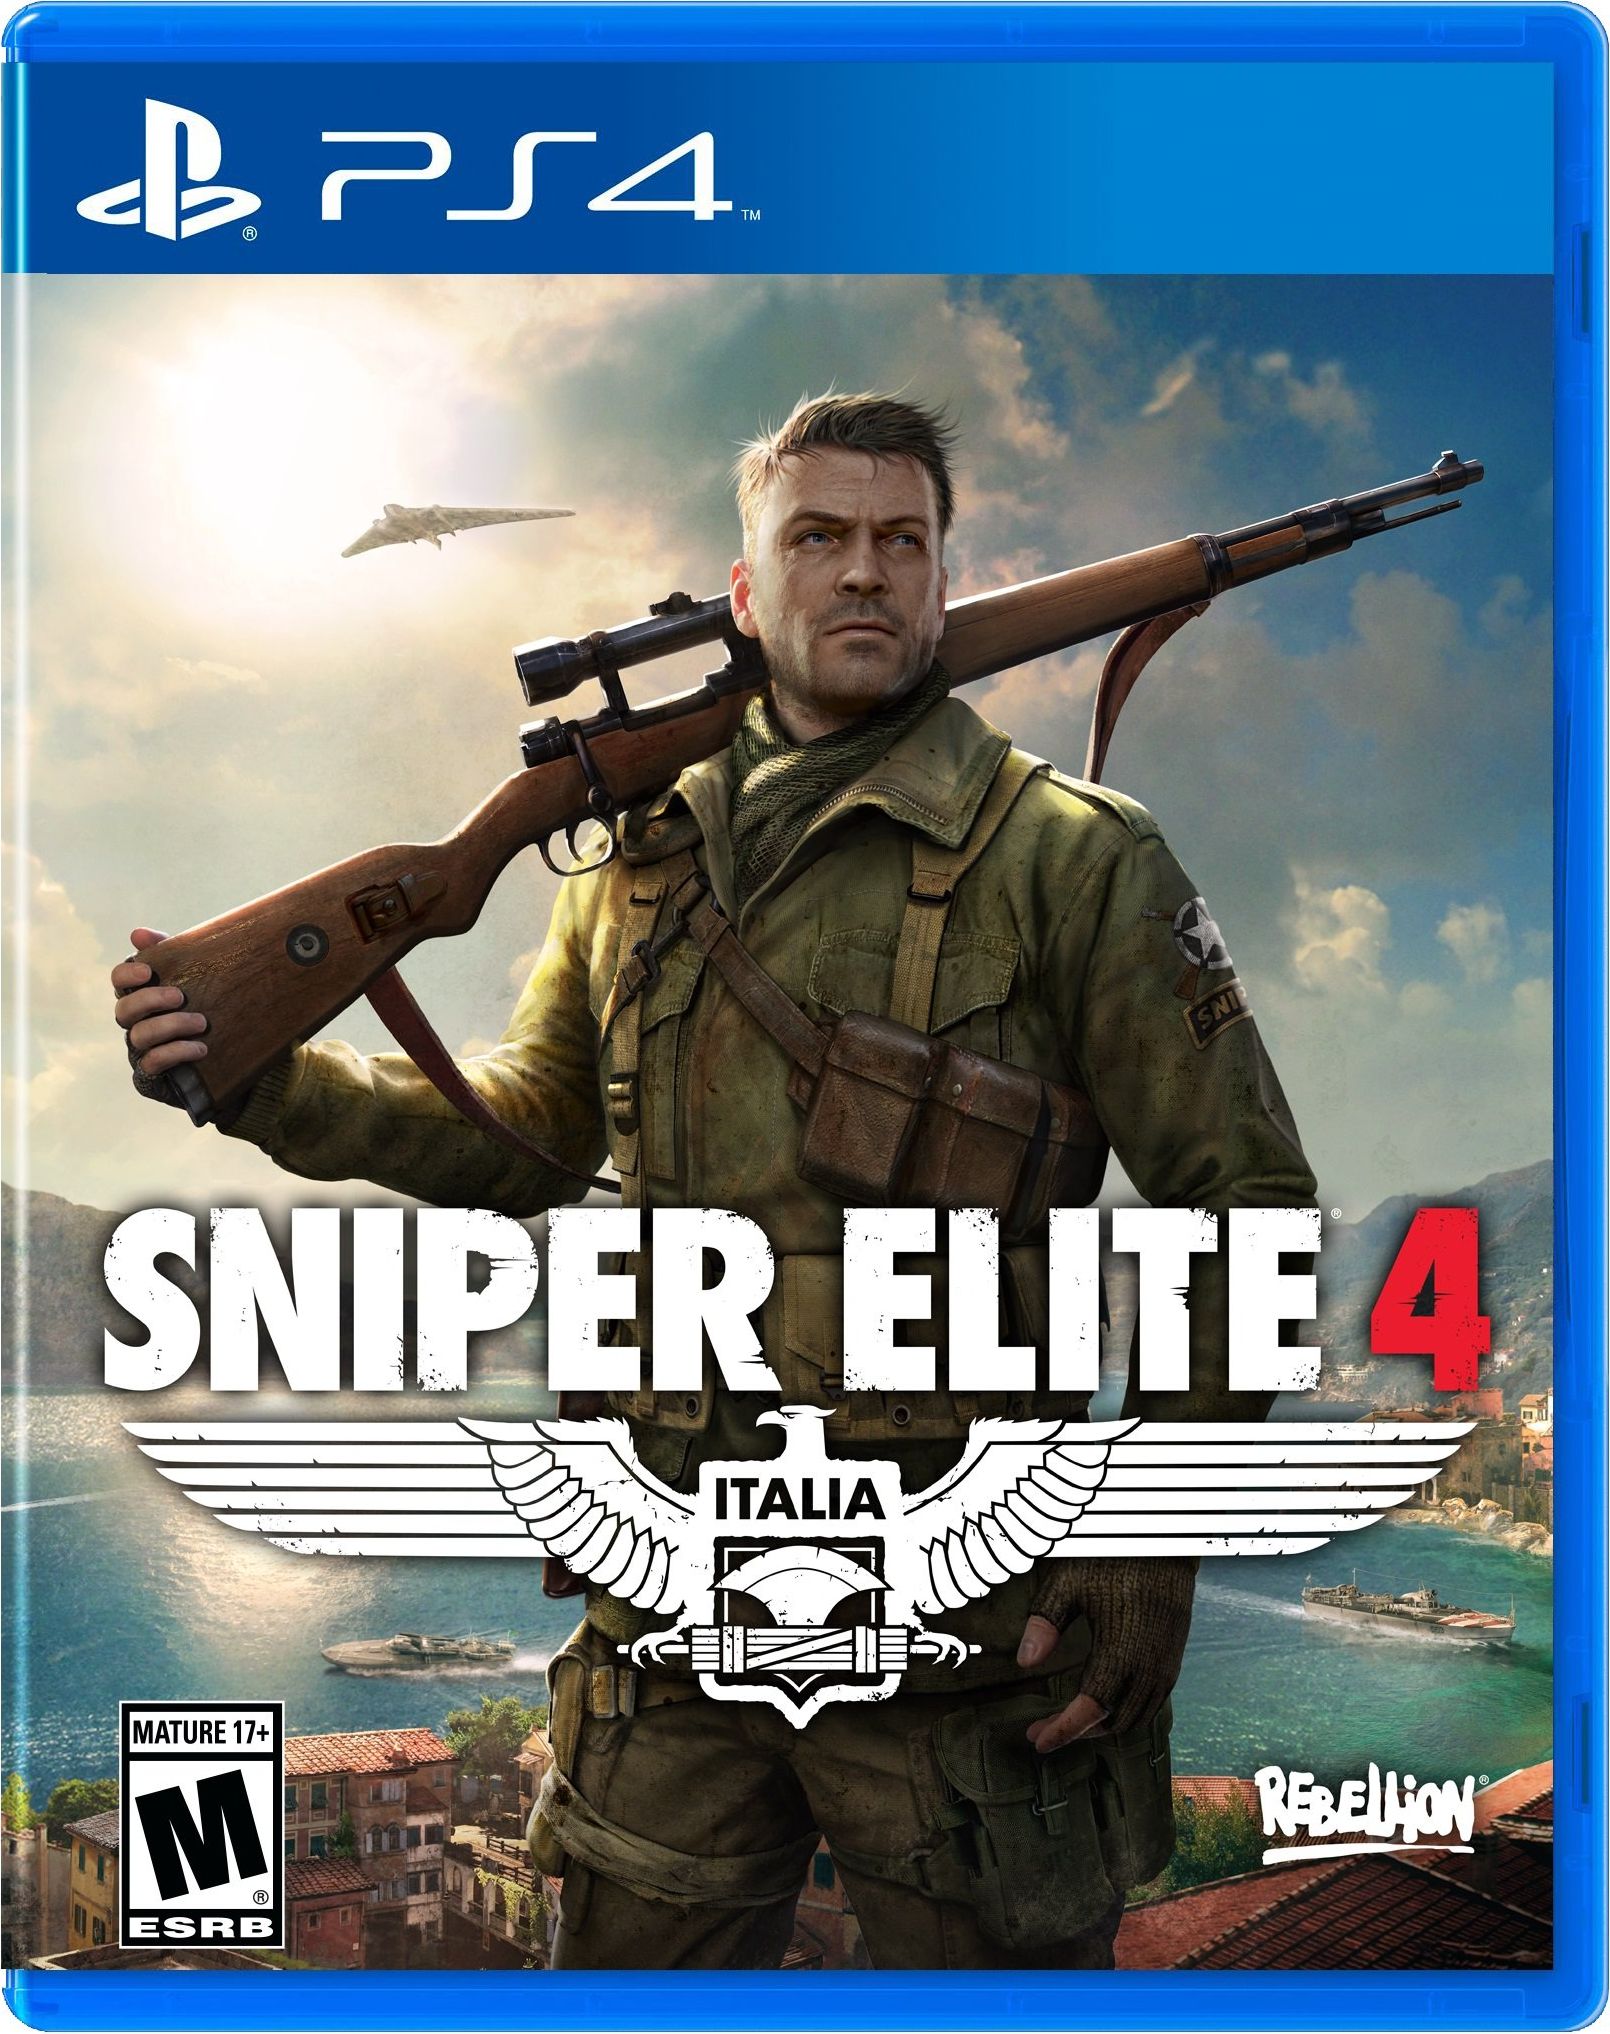 Kết quả hình ảnh cho Sniper Elite 4 cover ps4